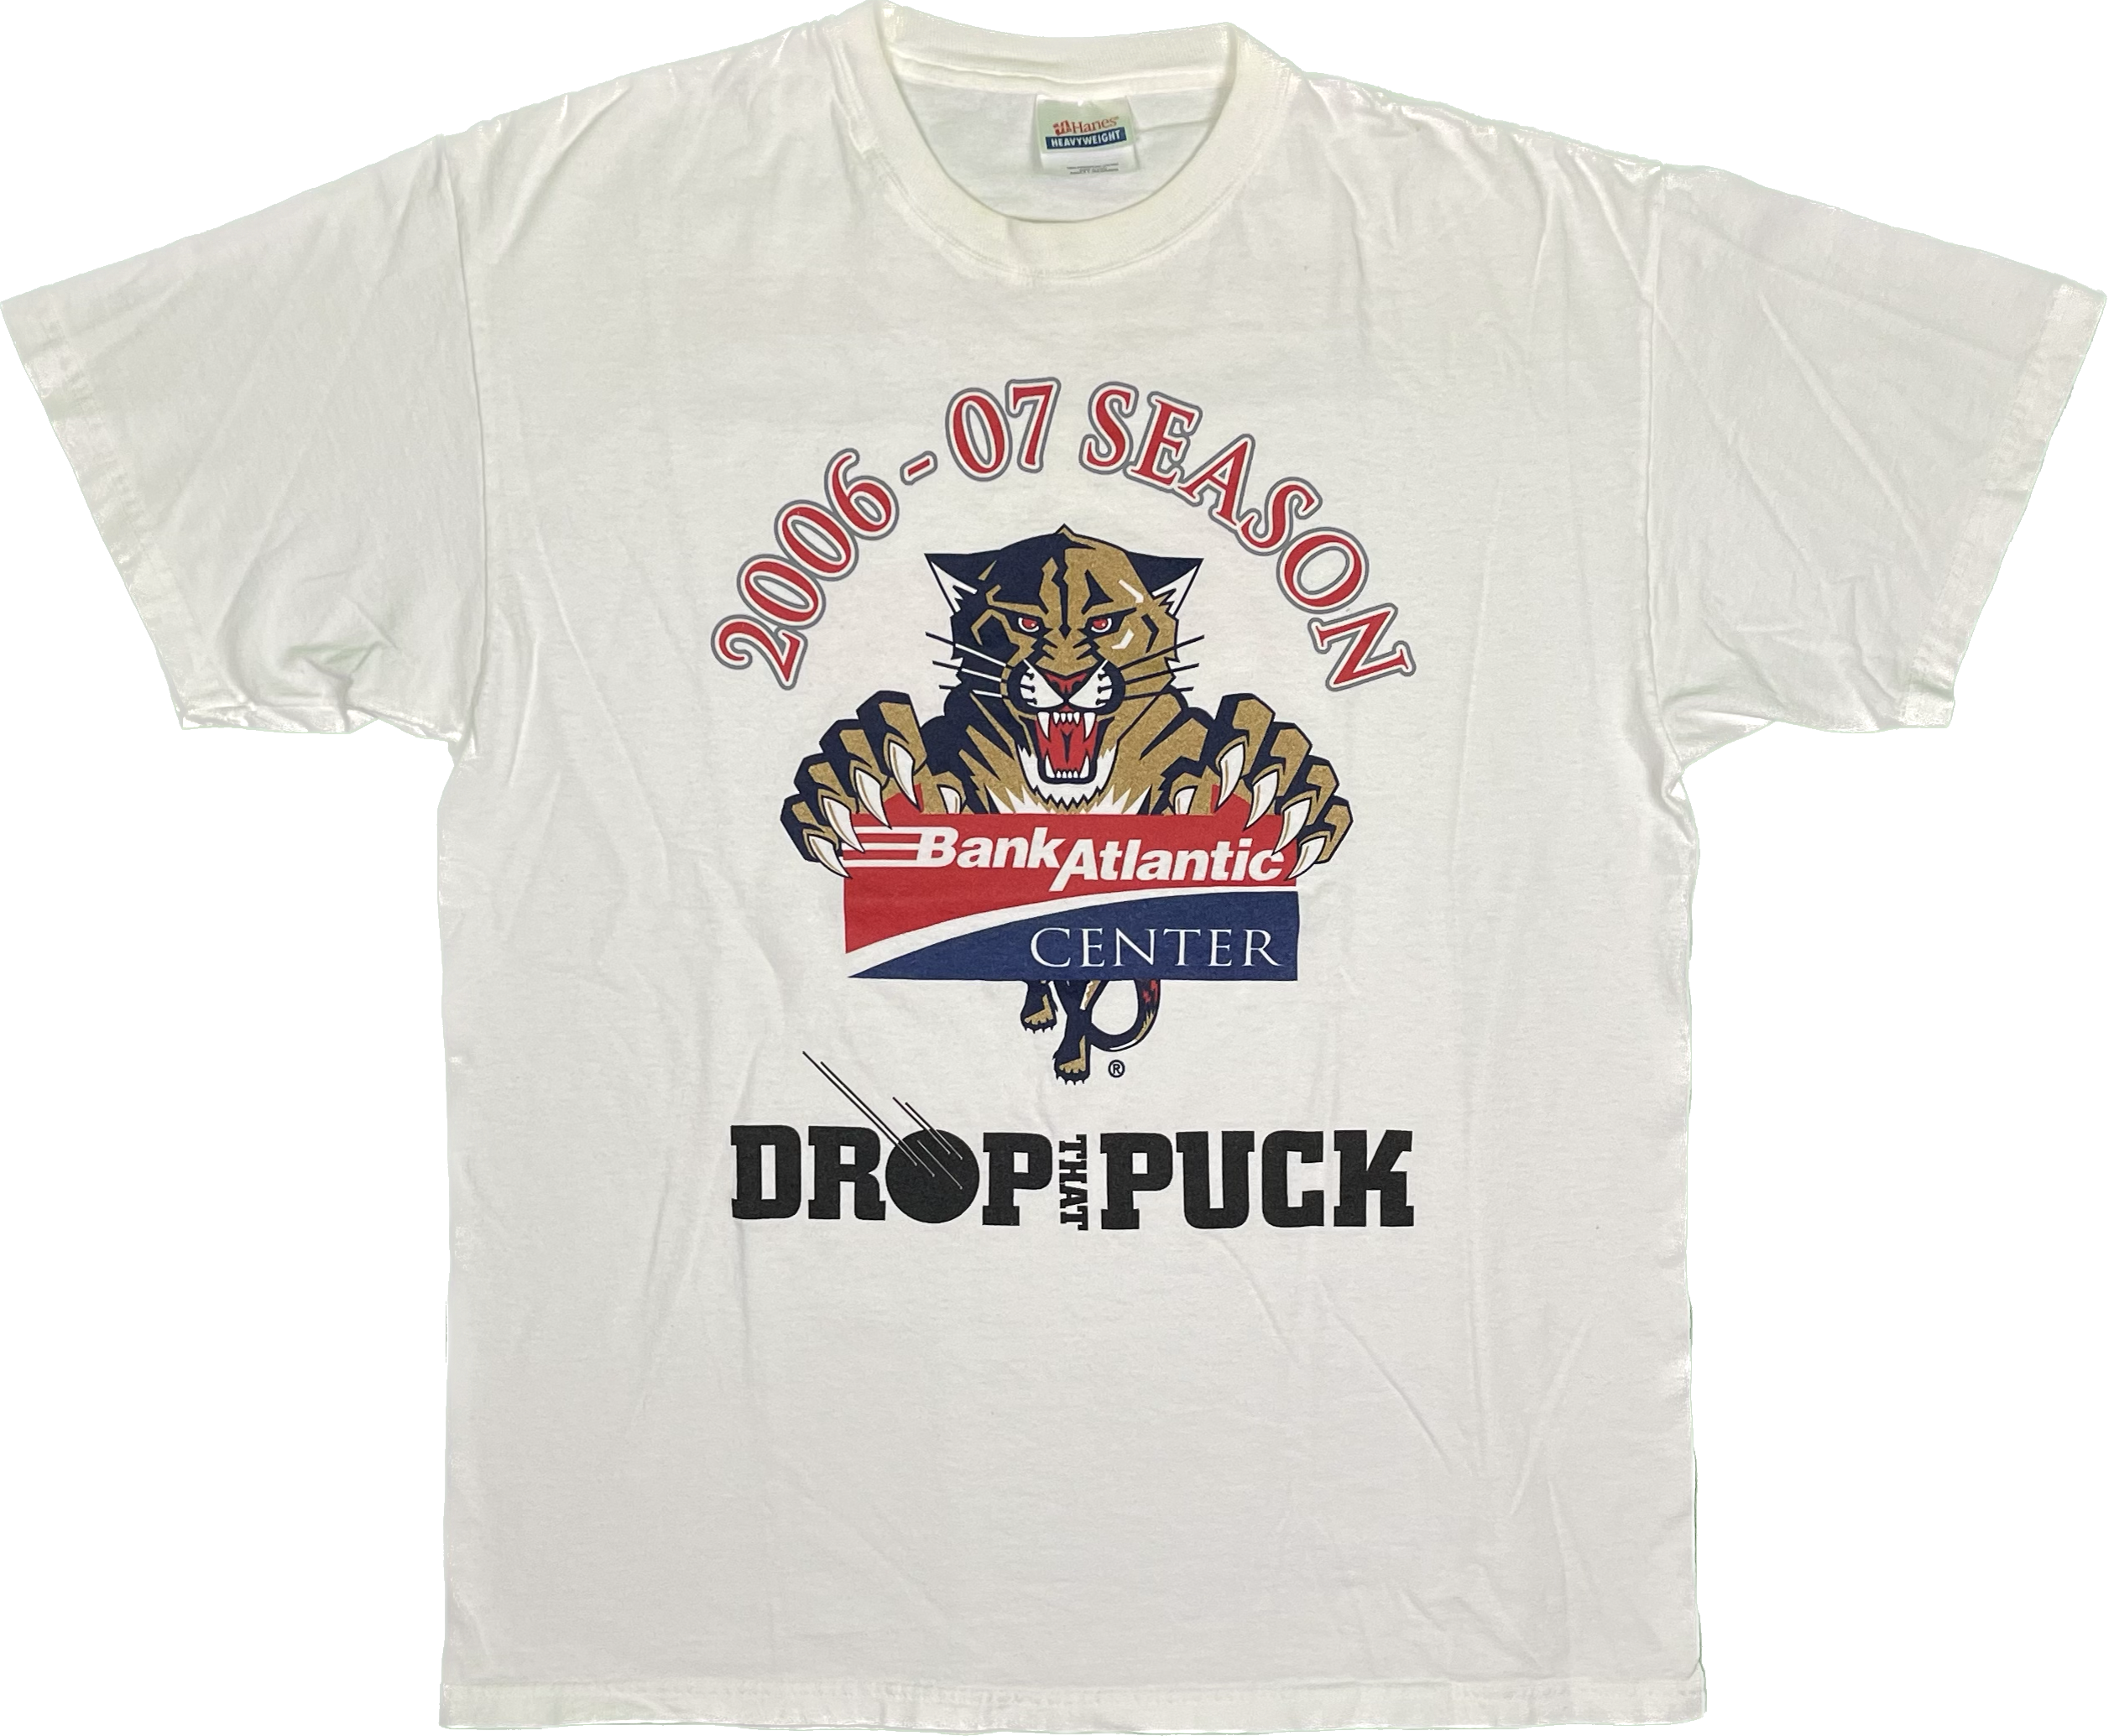 Florida Panthers 2006-07 Season Vintage T-Shirt